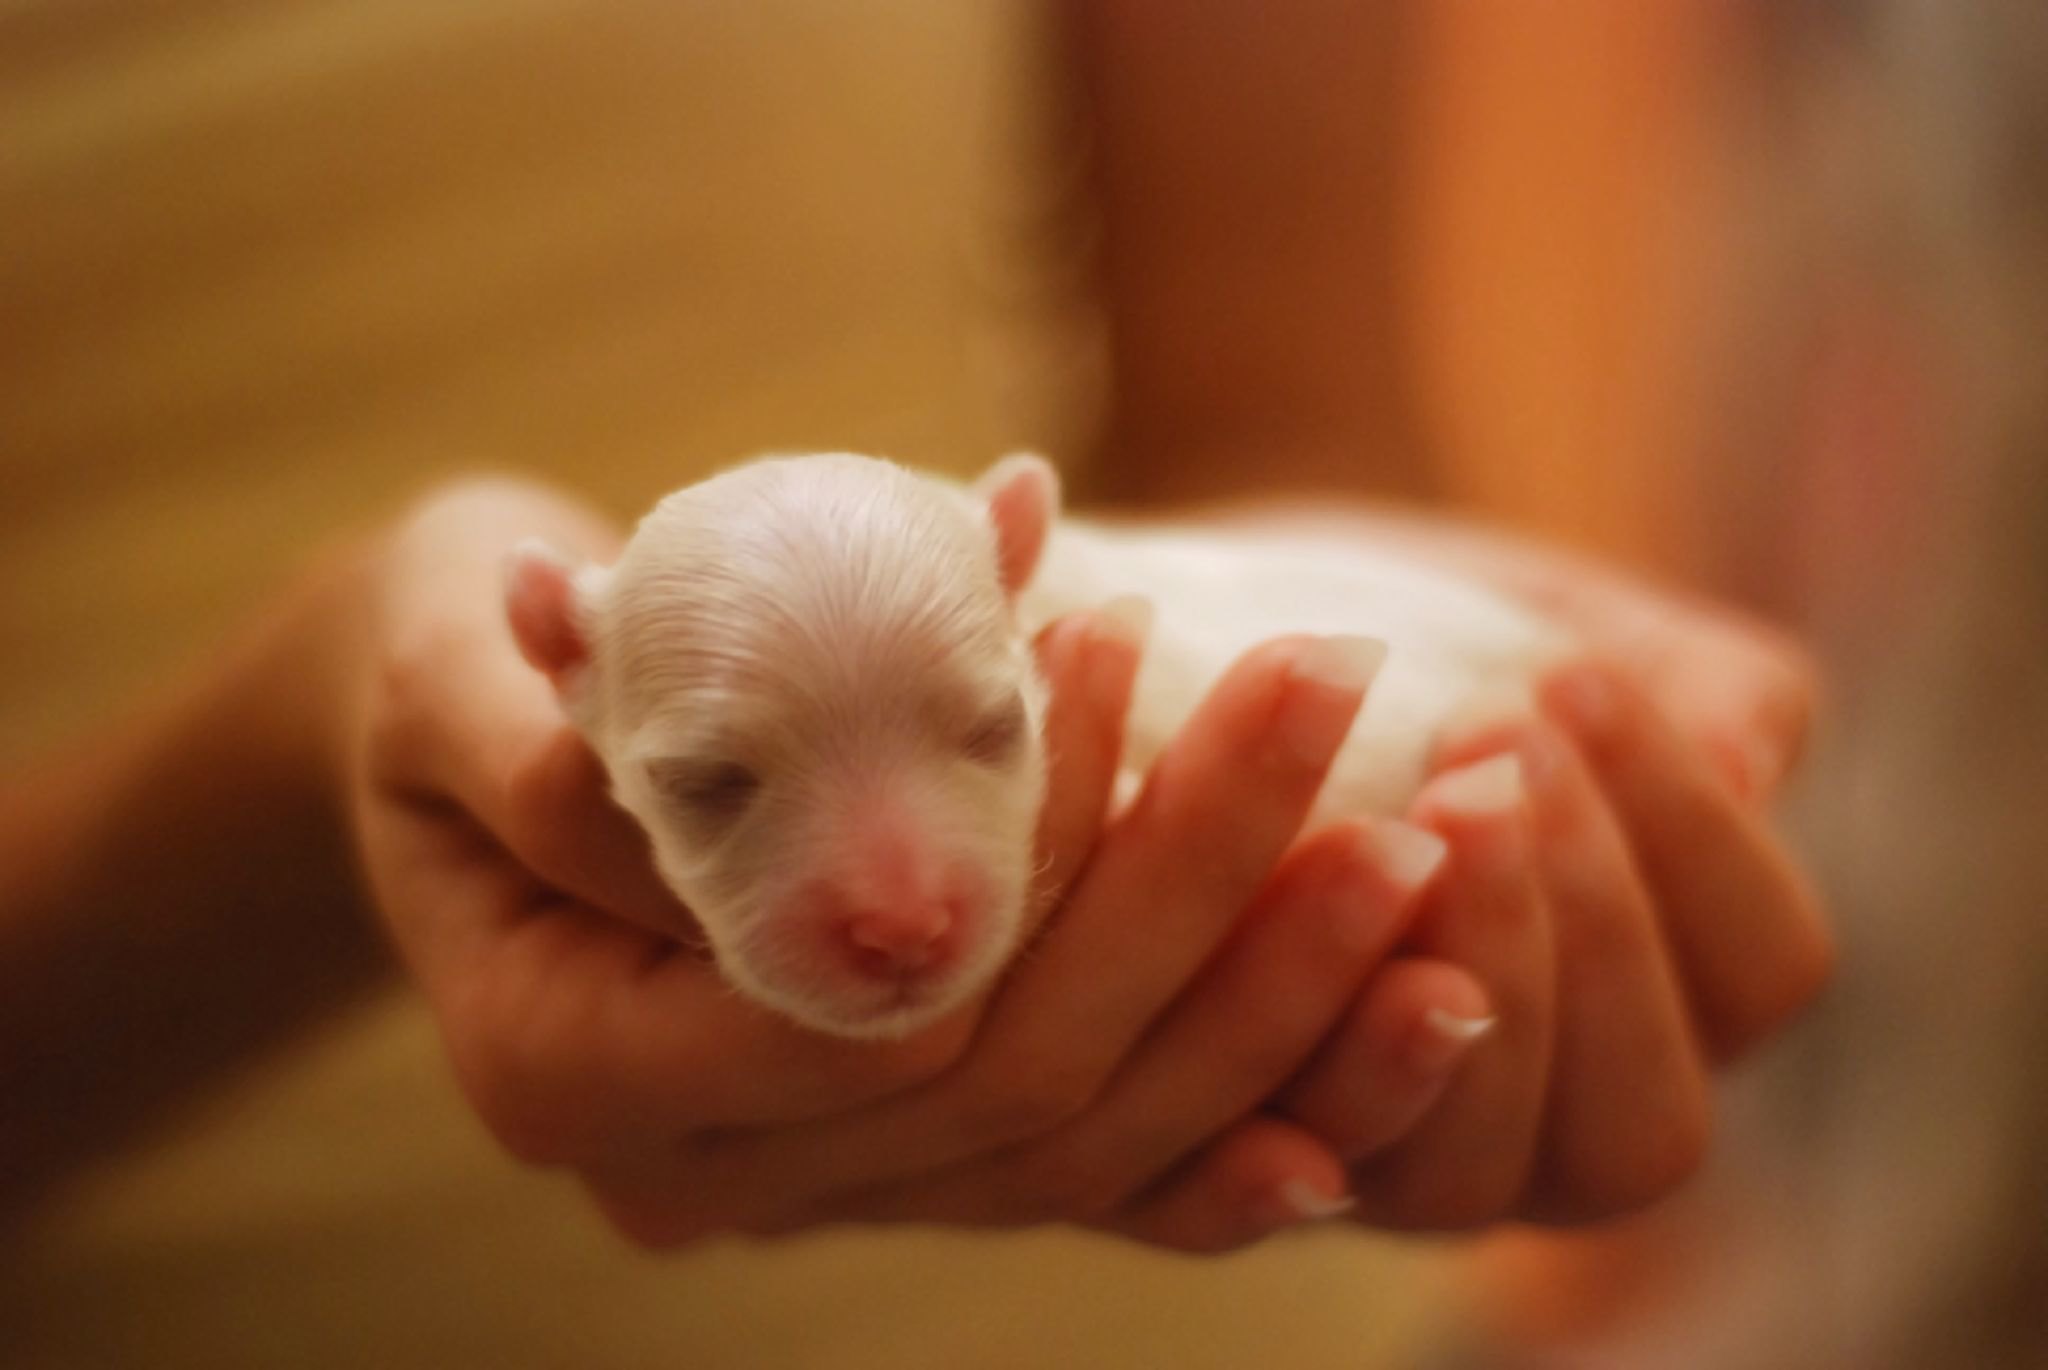 Los perritos recién nacidos apenas tiene protección contra enfermedades del exterior, por lo que sus visitas al veterinario deben programarse con cuidado